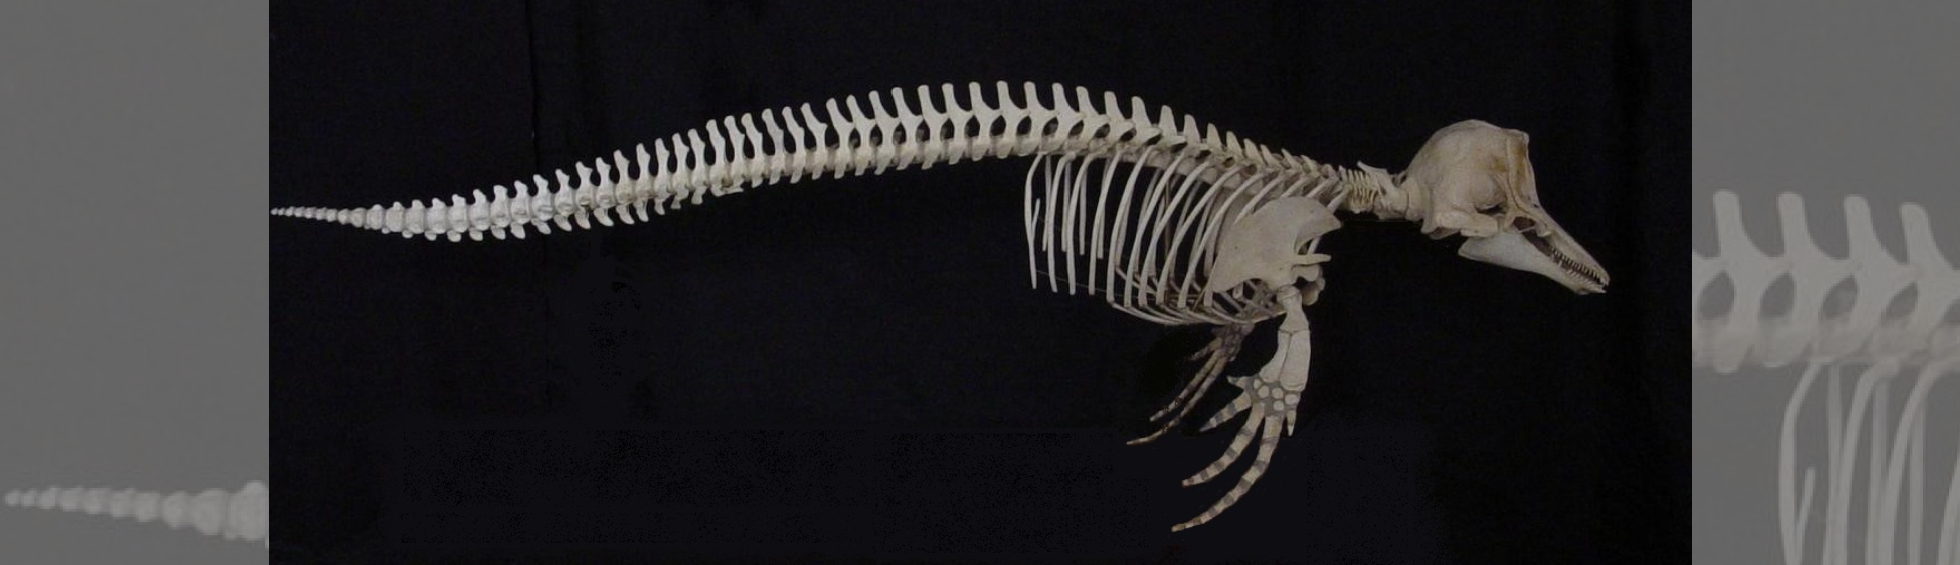 Photo du squelette d'Orcaella brevirostris